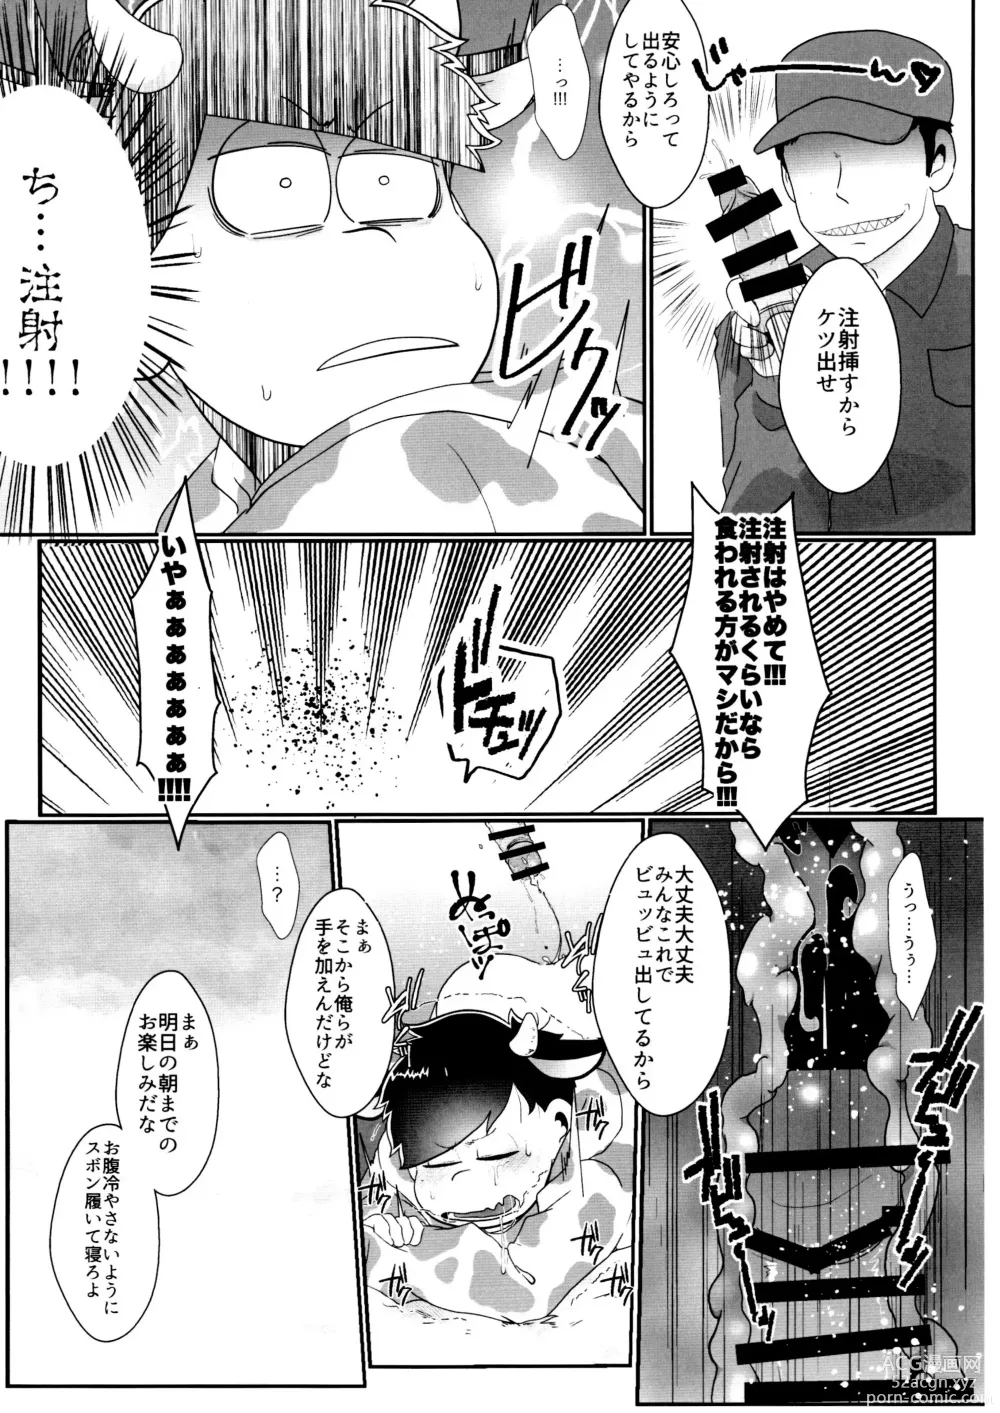 Page 4 of doujinshi Kairaku ni yowai Ichimatsu ga harande bonyū dashi tari boko sa re tari rettoka shokushuzeme sa rerukedo daitai ochi wa isshona mobu ichi no erobon